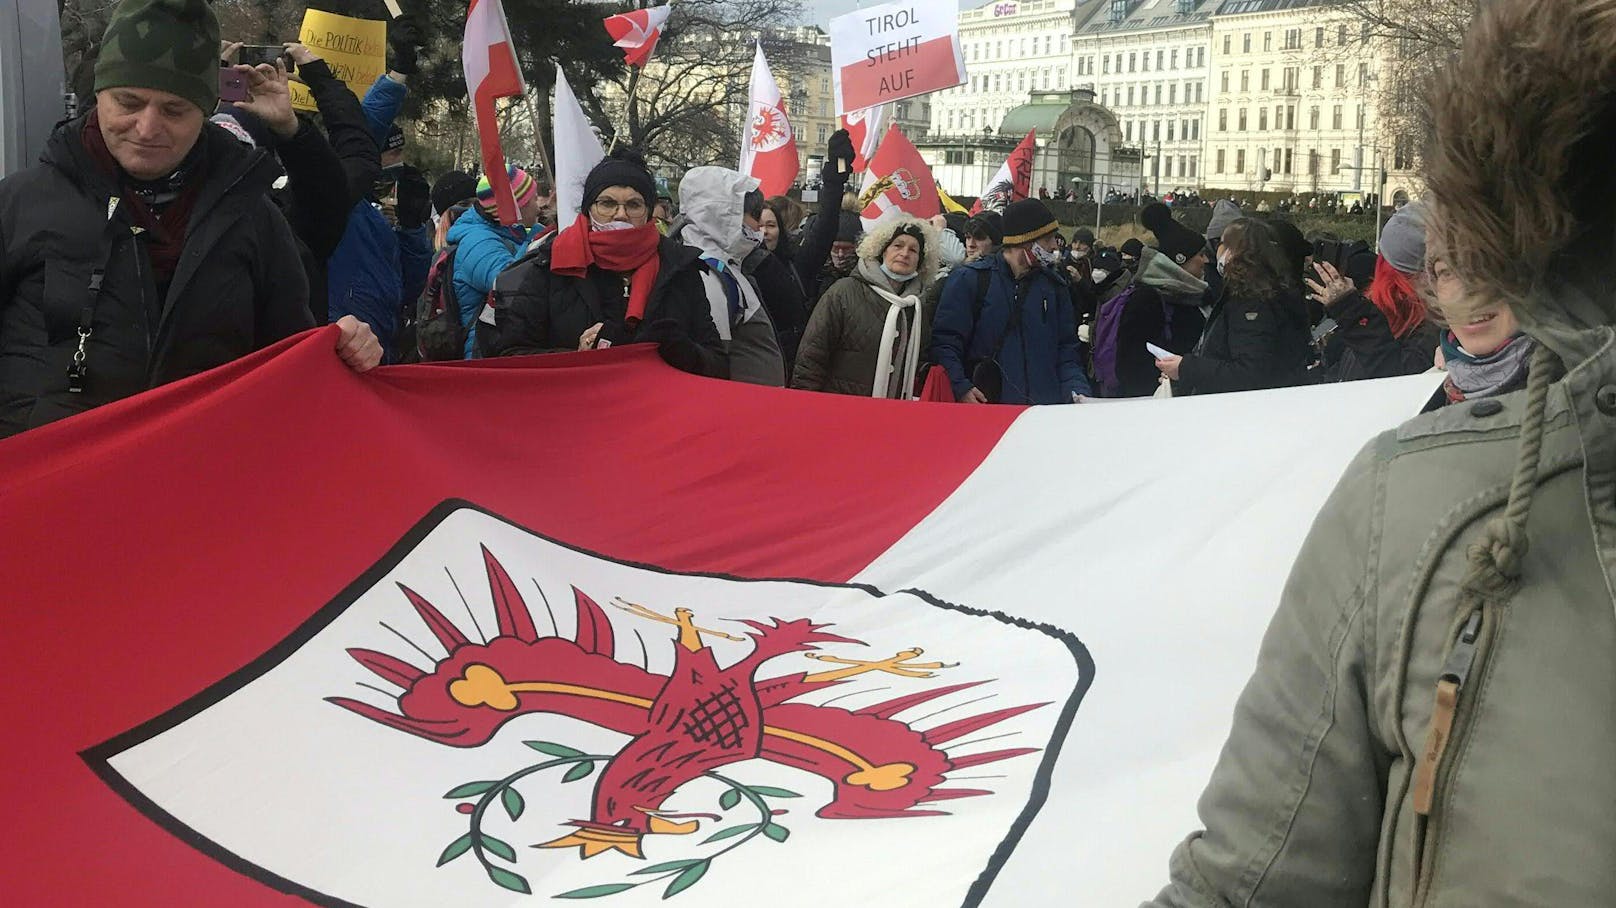 Anti-Corona-Demonstranten protestieren gegen das Vorgehen der Regierung in Tirol.